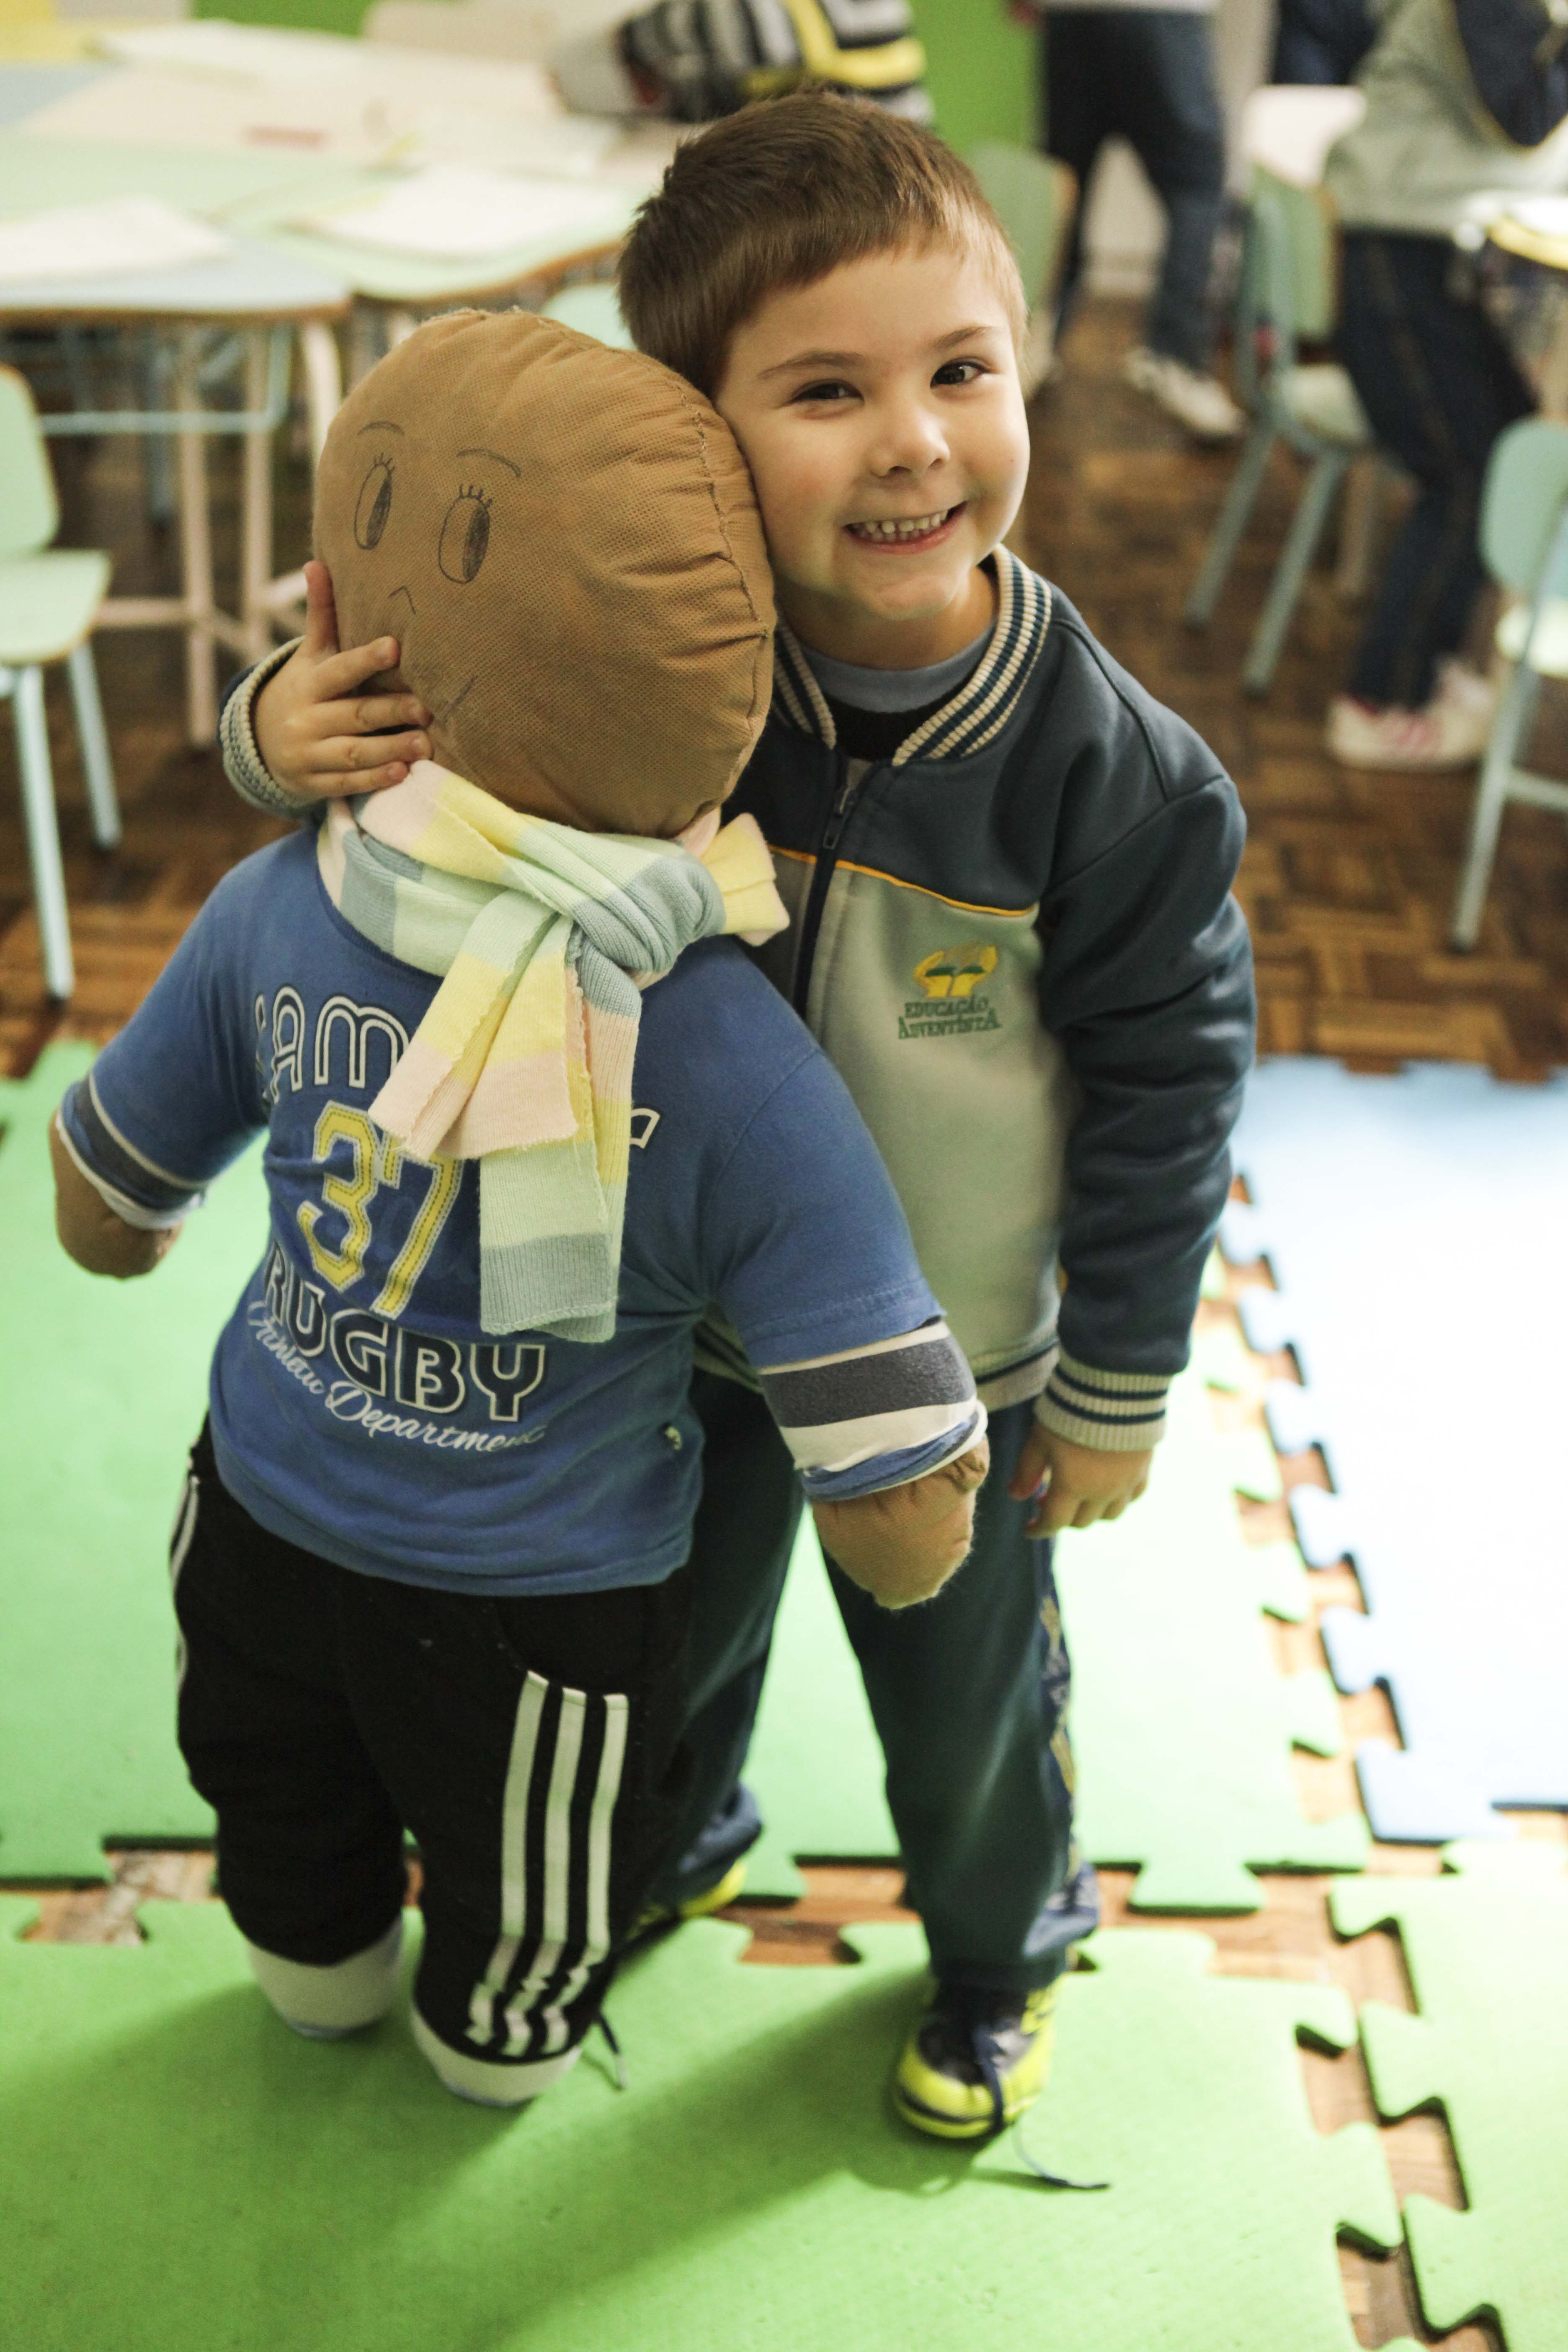 Através dos bonecos, as crianças criam o espírito de solidariedade e amor ao próximo.